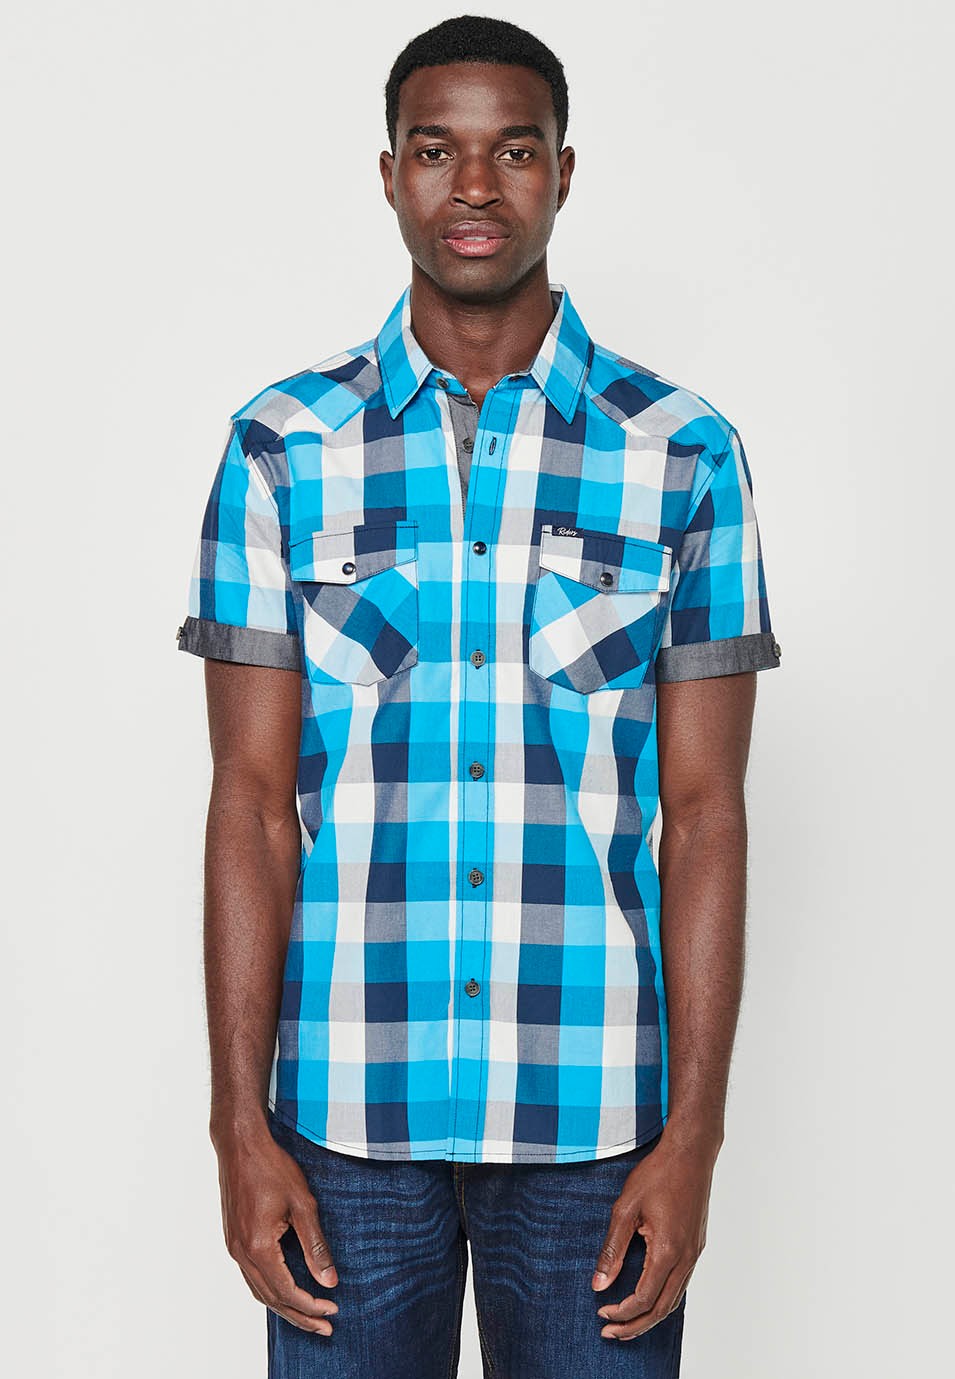 Camisa manga corta de algodón de cuadros, color azul y blanco para hombres 6